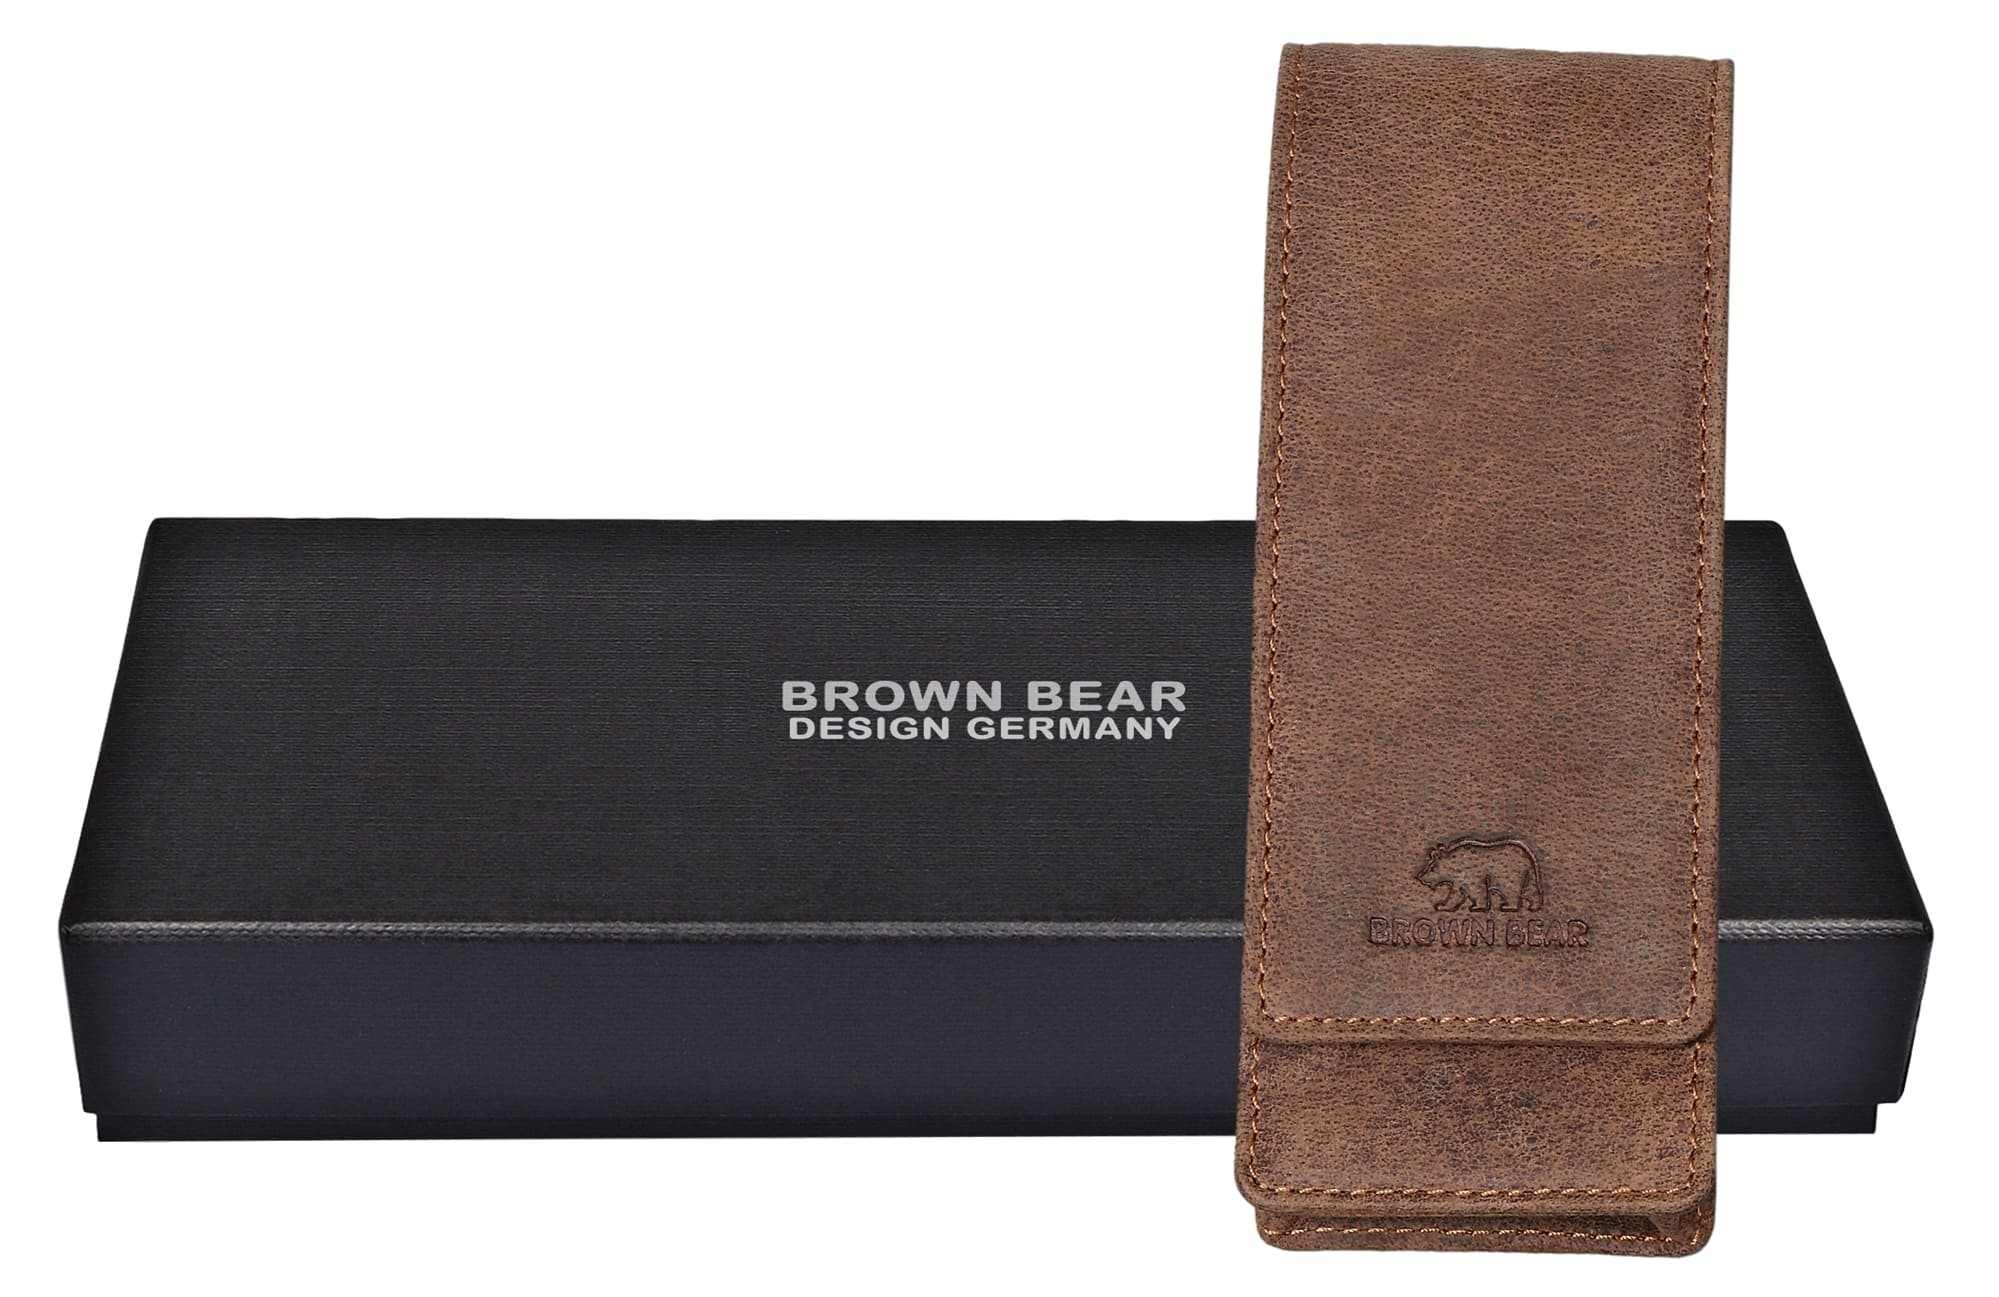 Brown Bear Golf 80 - Fülleretui für drei Stifte